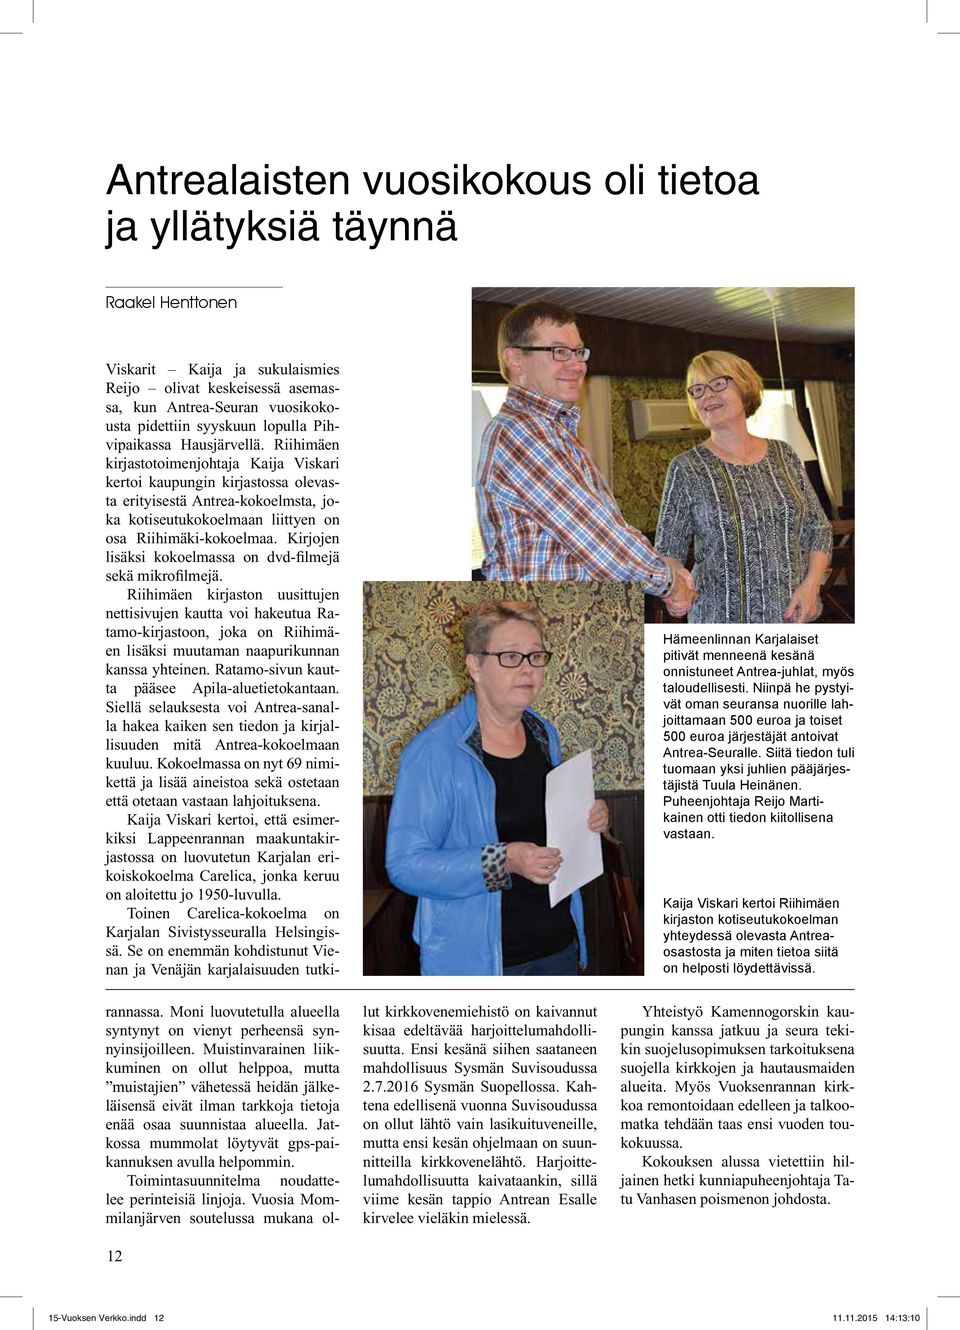 Riihimäen kirjastotoimenjohtaja Kaija Viskari kertoi kaupungin kirjastossa olevasta erityisestä Antrea-kokoelmsta, joka kotiseutukokoelmaan liittyen on osa Riihimäki-kokoelmaa.